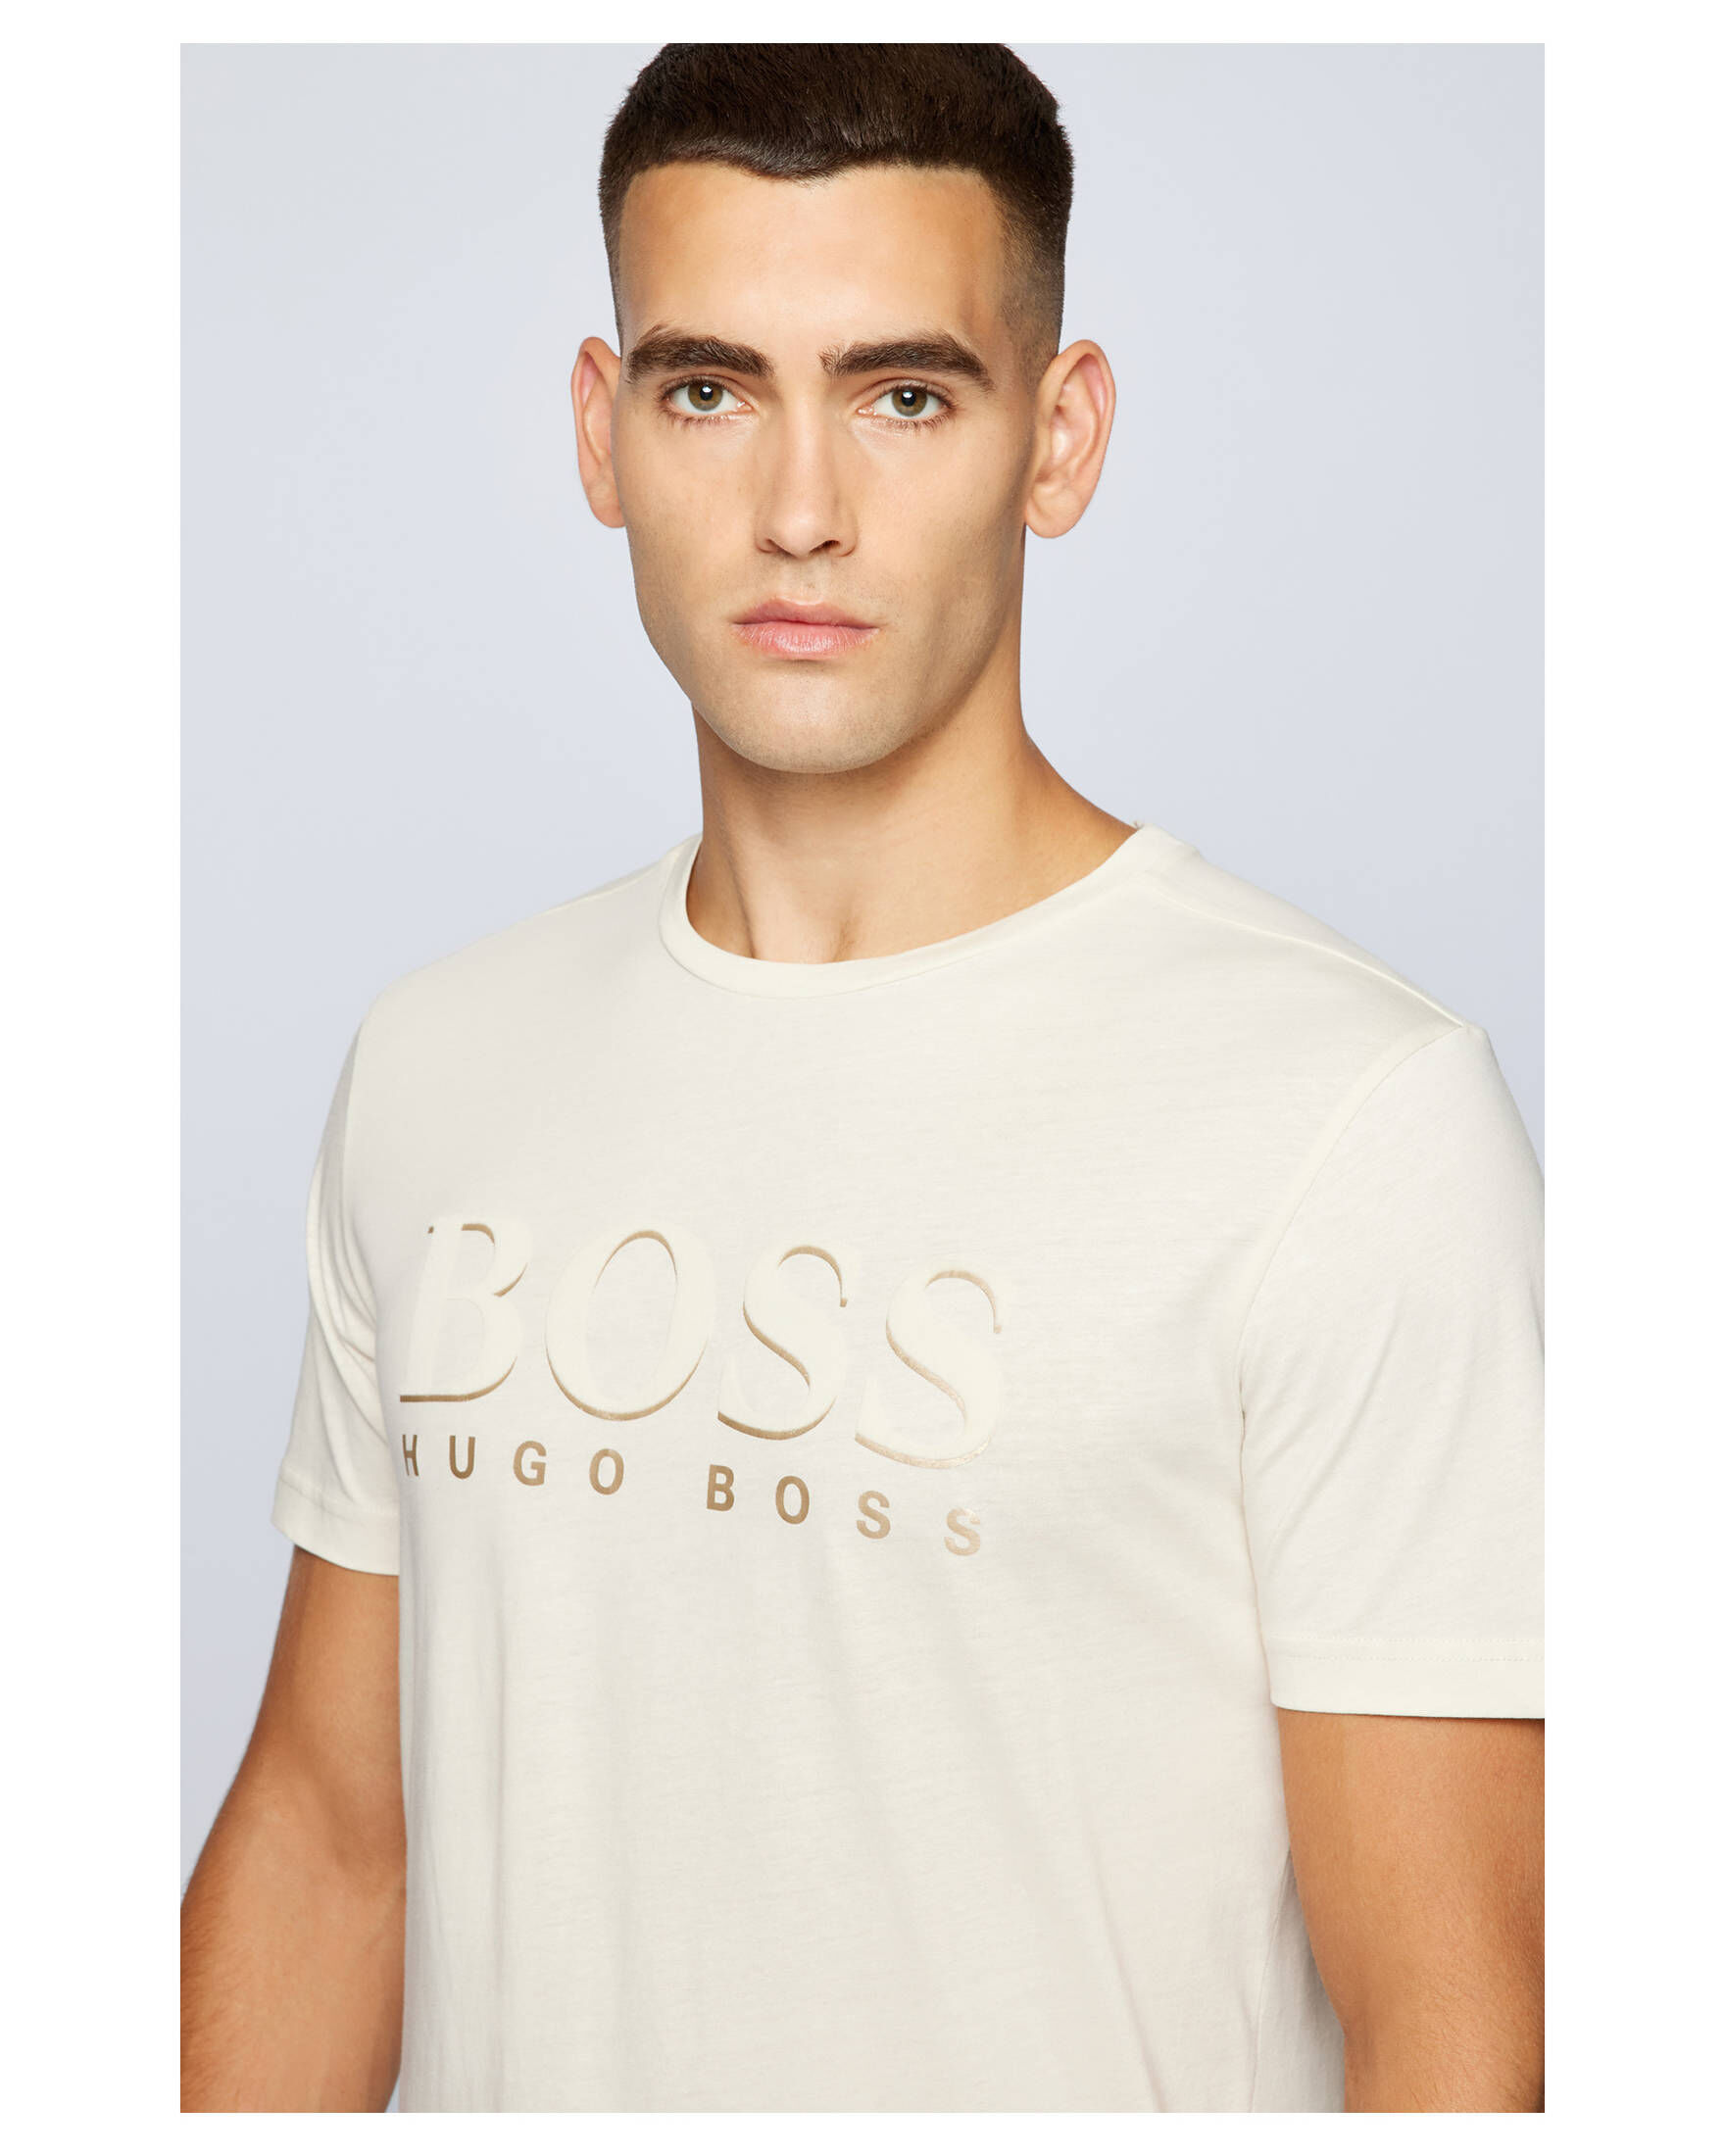 Herren Kleidung Hugo Boss Herren T-Shirts & Polos Hugo Boss Herren T-Shirts Hugo Boss Herren T-Shirts HUGO BOSS 3 L T-Shirts Hugo Boss Herren weiß 